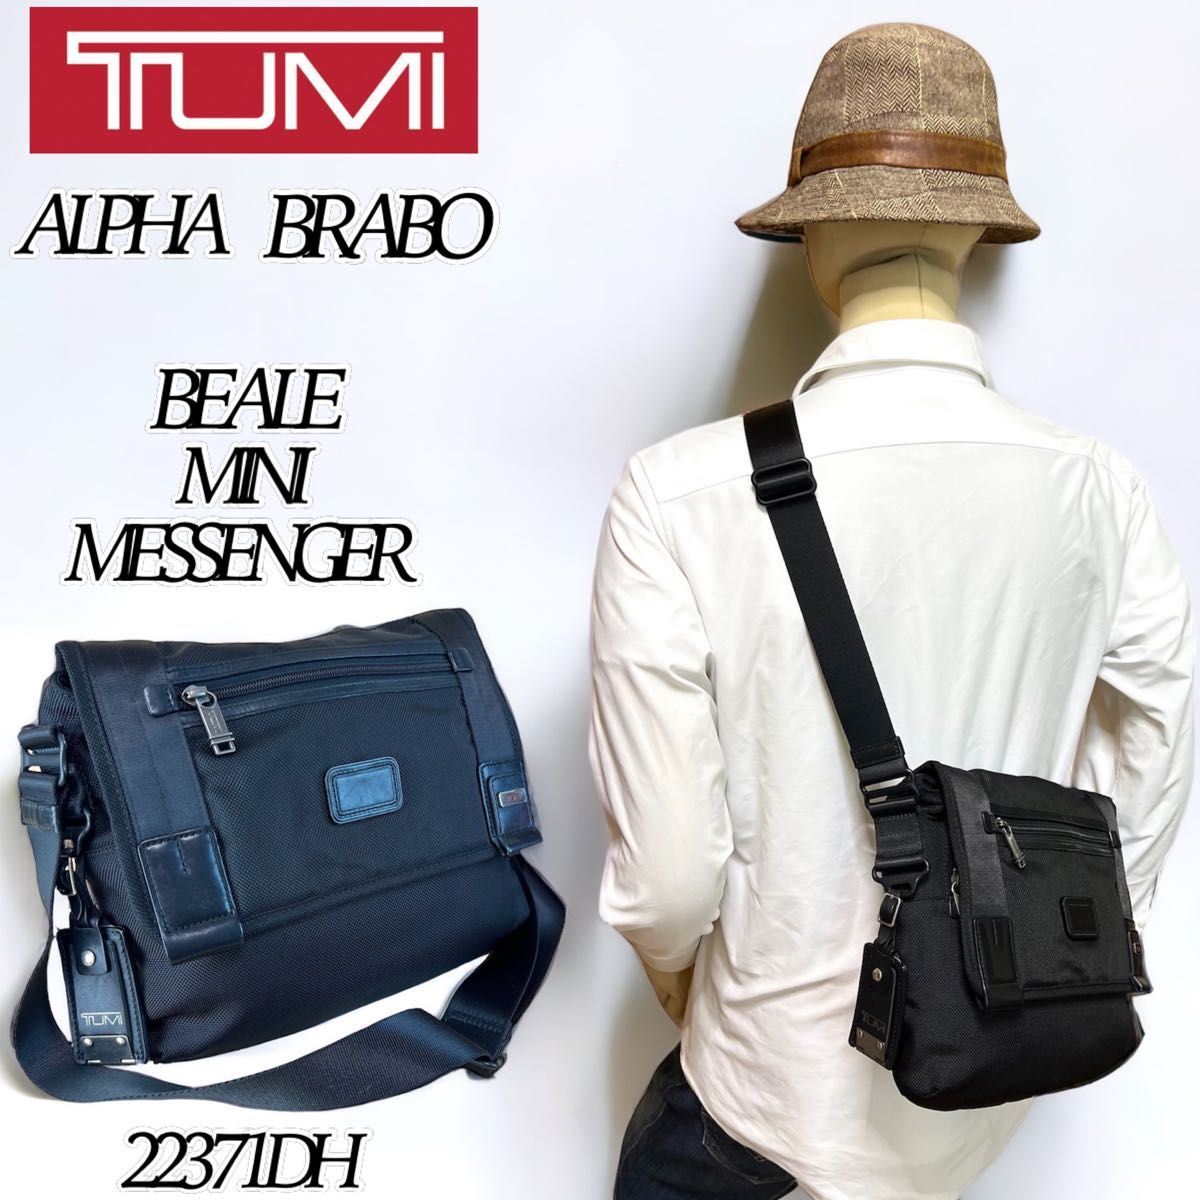 【希少】TUMI 22371DH アルファブラボー ビールミニ メッセンジャー ボディバッグ 黒 ショルダーバッグ